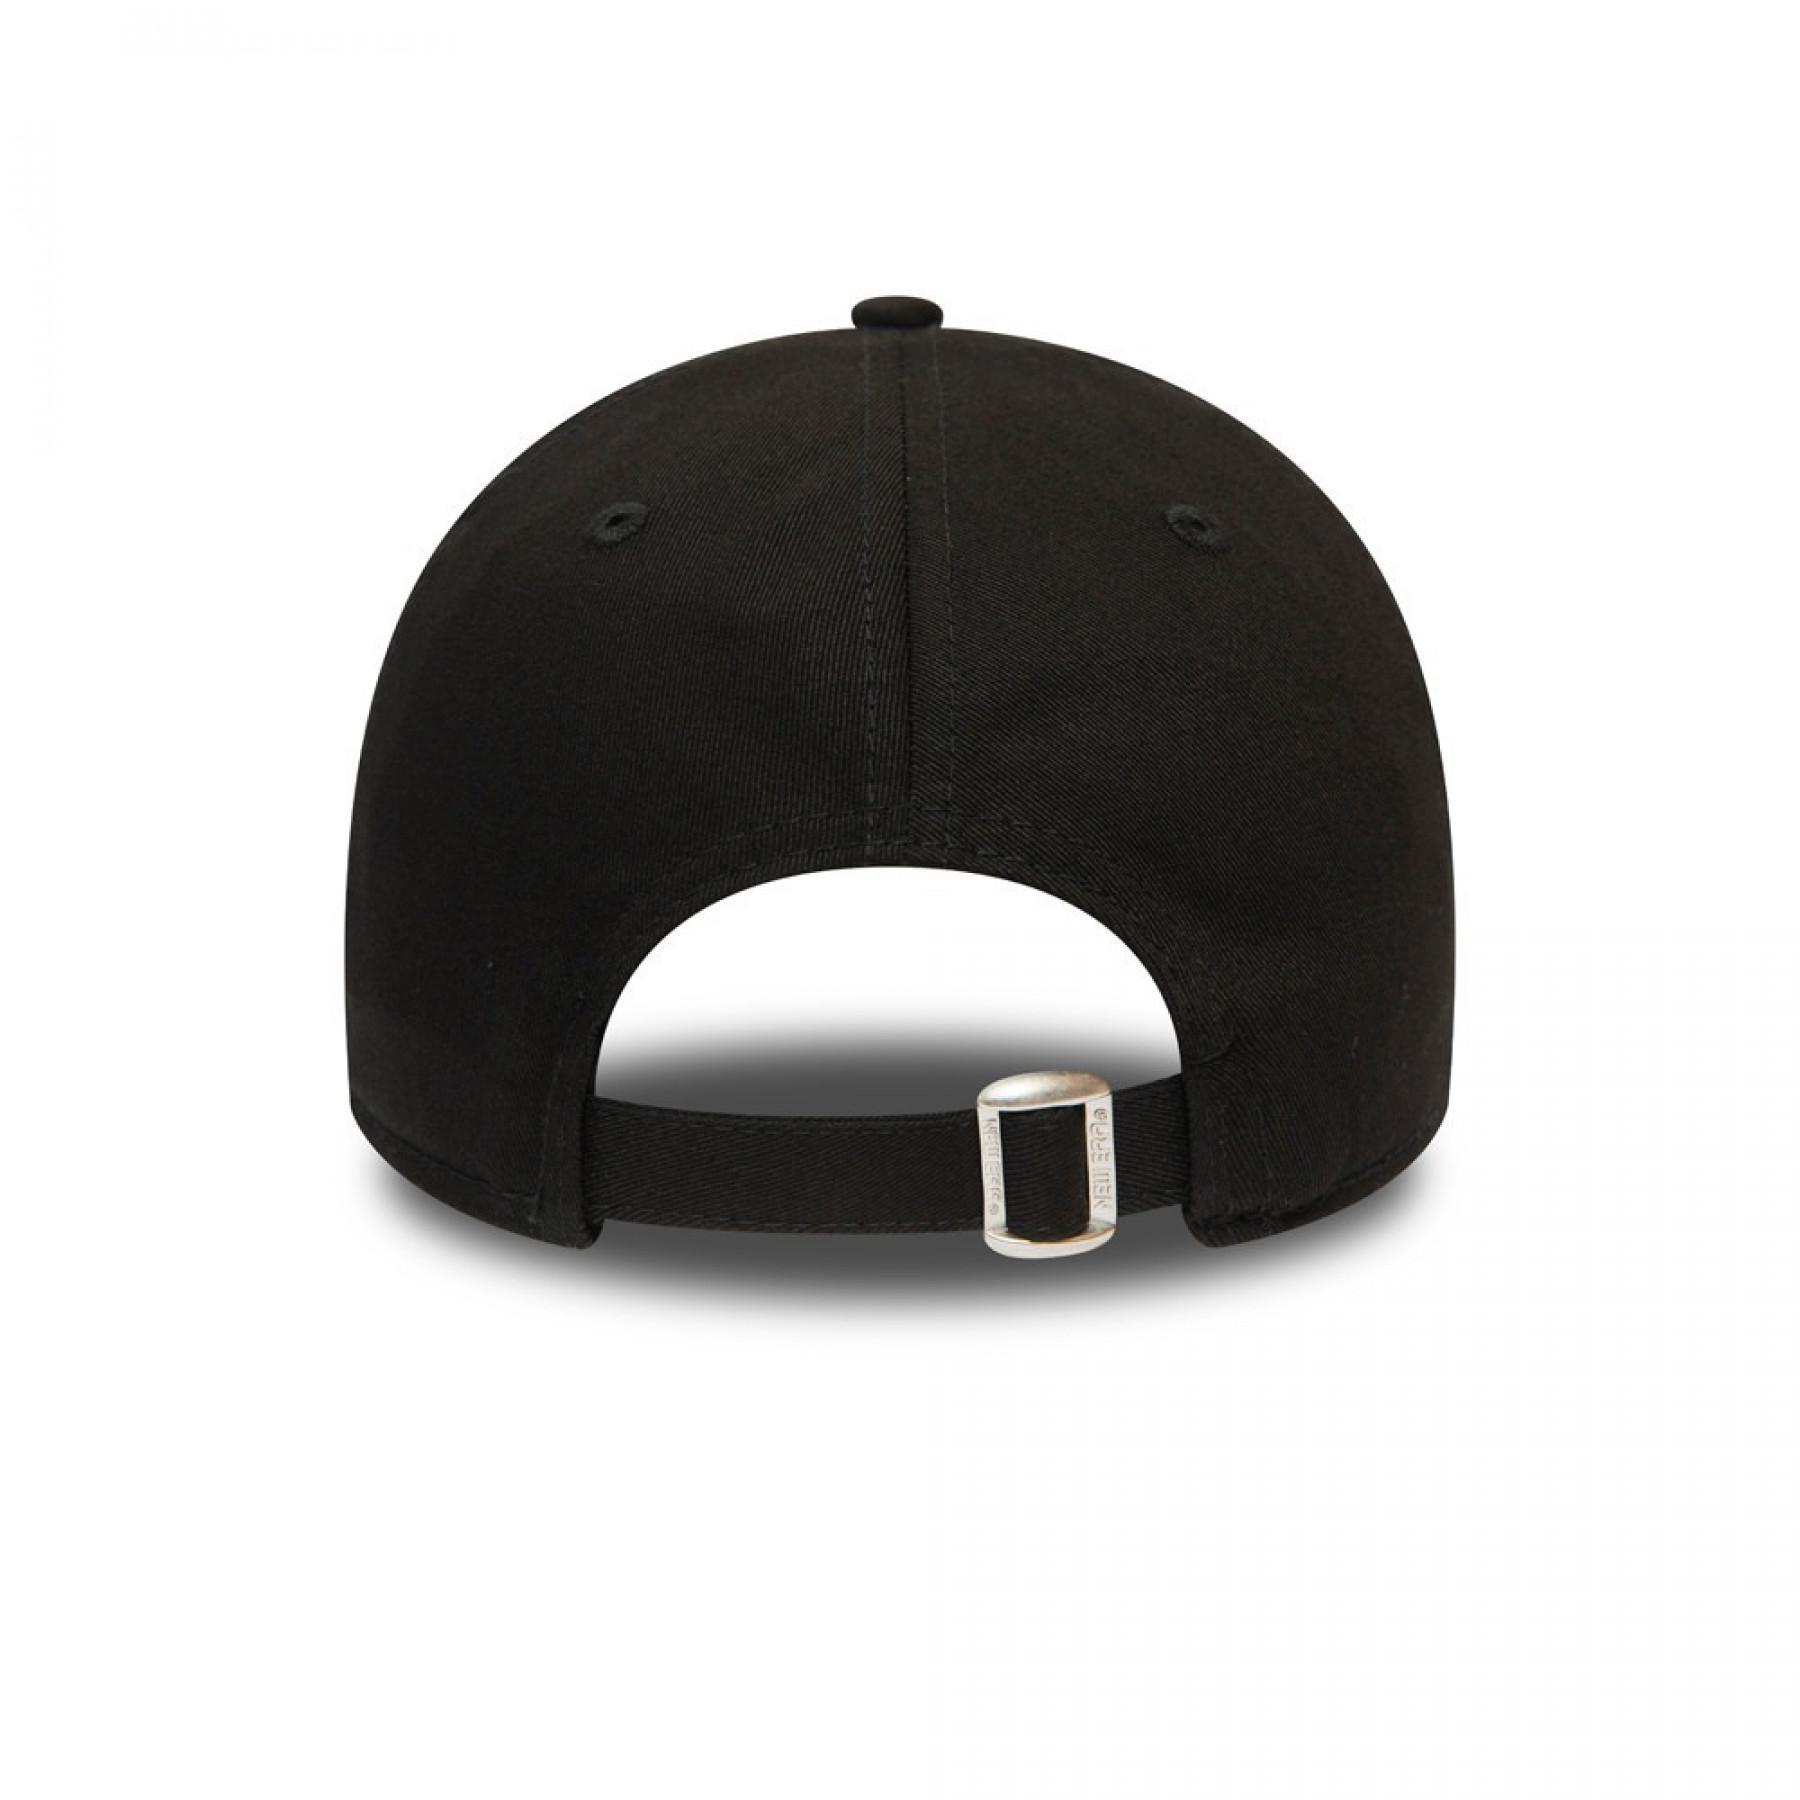 New York Yankees Essential 940 kid cap